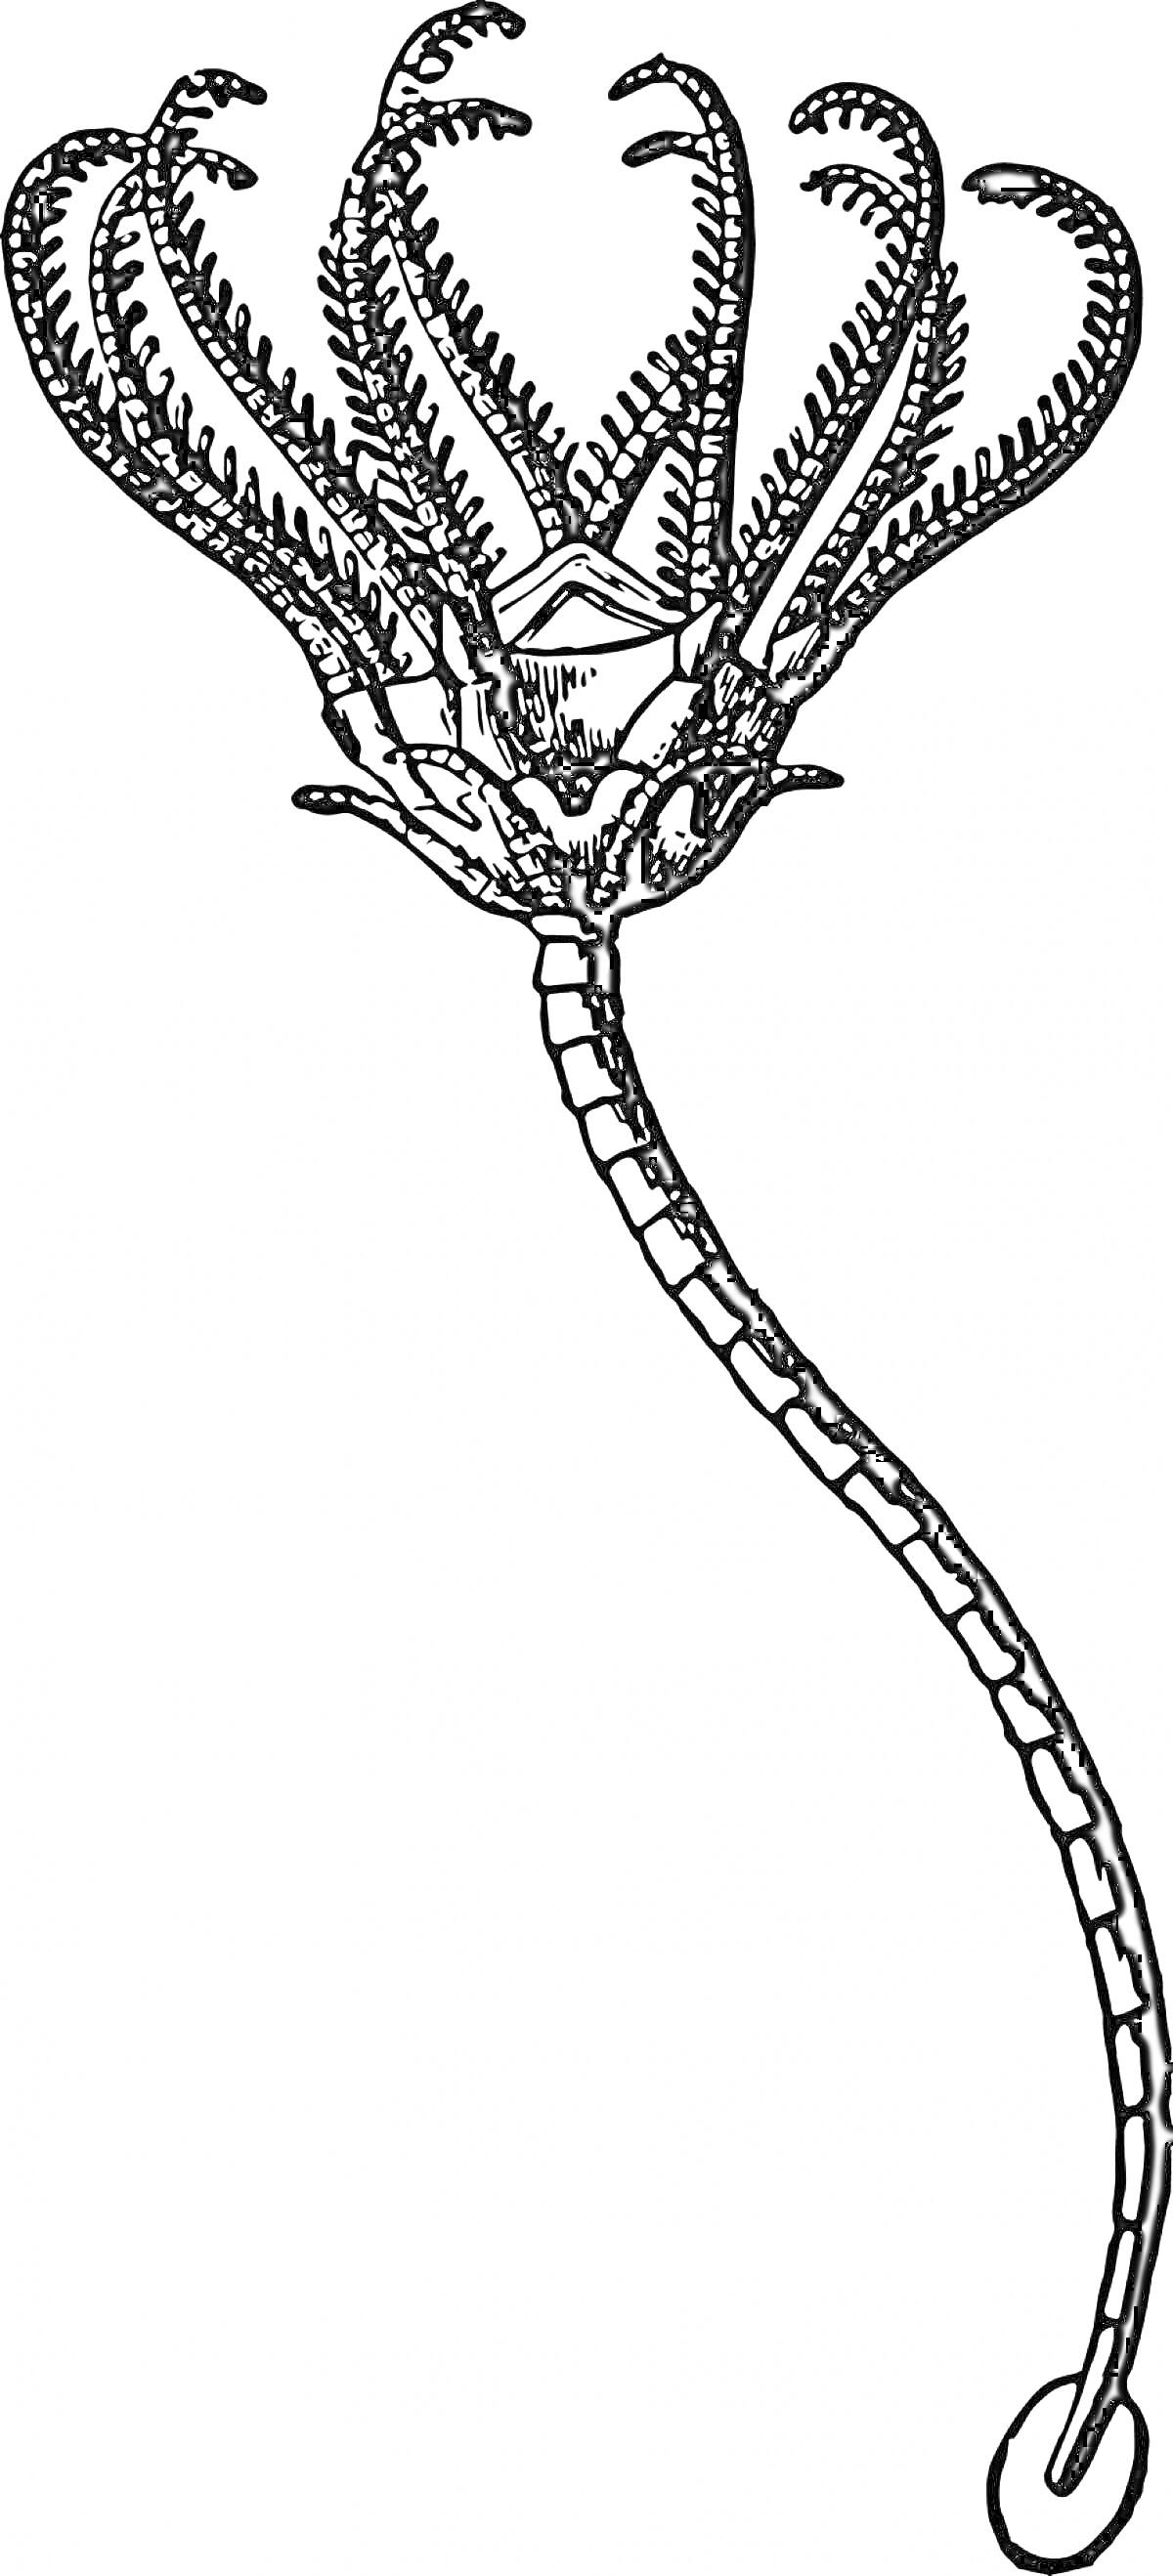 Раскраска Морская лилия с длинным стеблем и многочисленными раскидистыми щупальцами